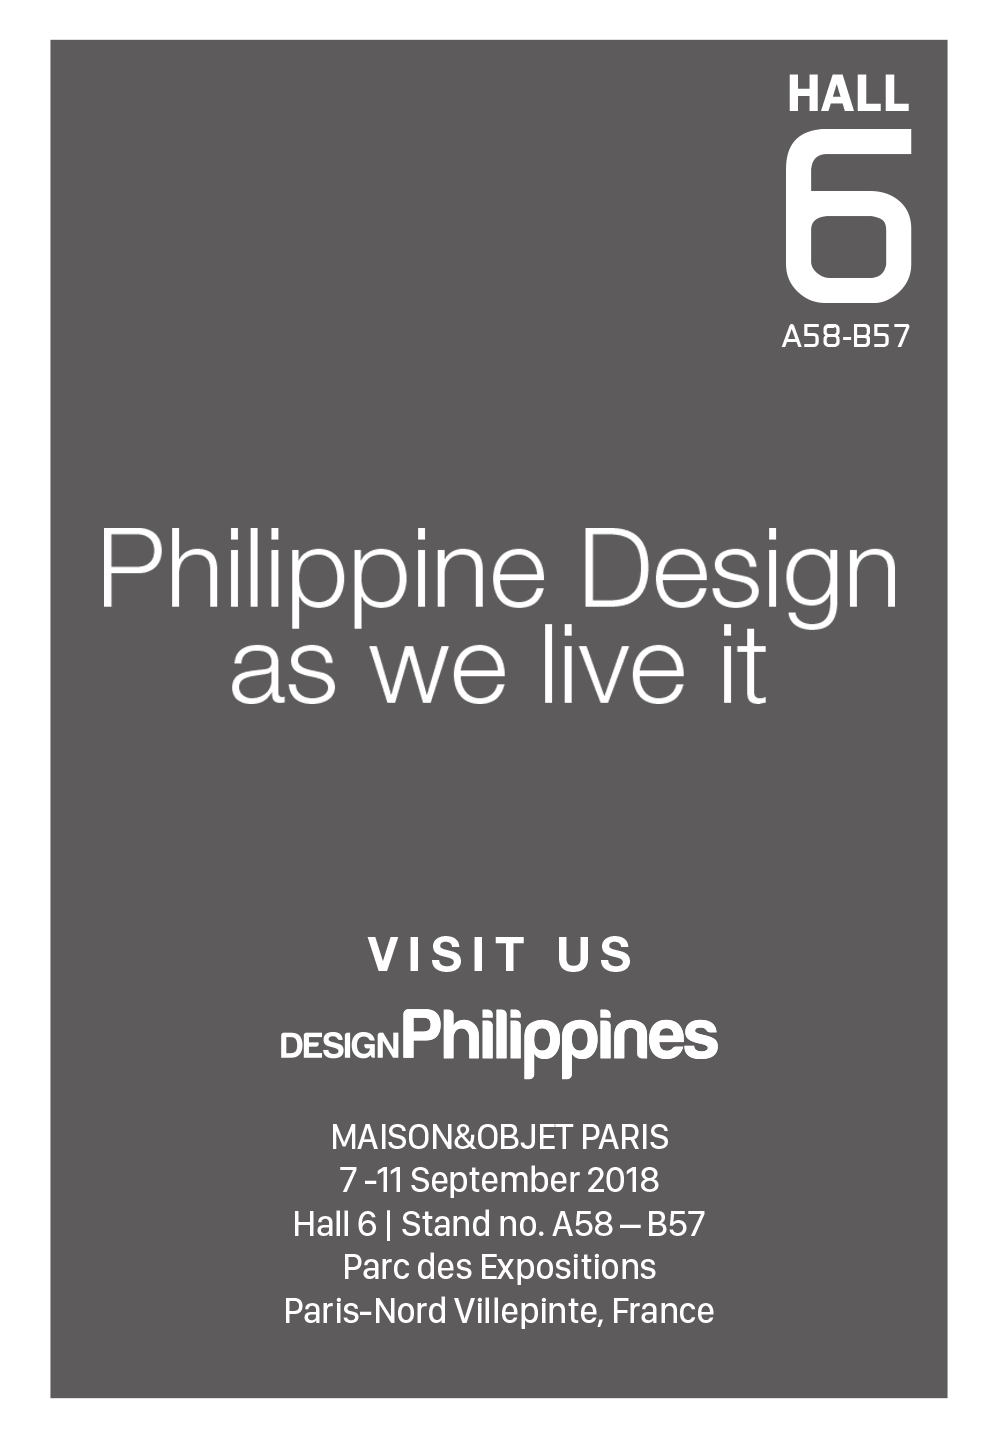 Design Philippines at MAISON&OBJET Paris | 7 – 11 September 2018  | Parc des Expositions, Paris Nord Villepinte, France | HALL 6 | Stand no. A58-B57